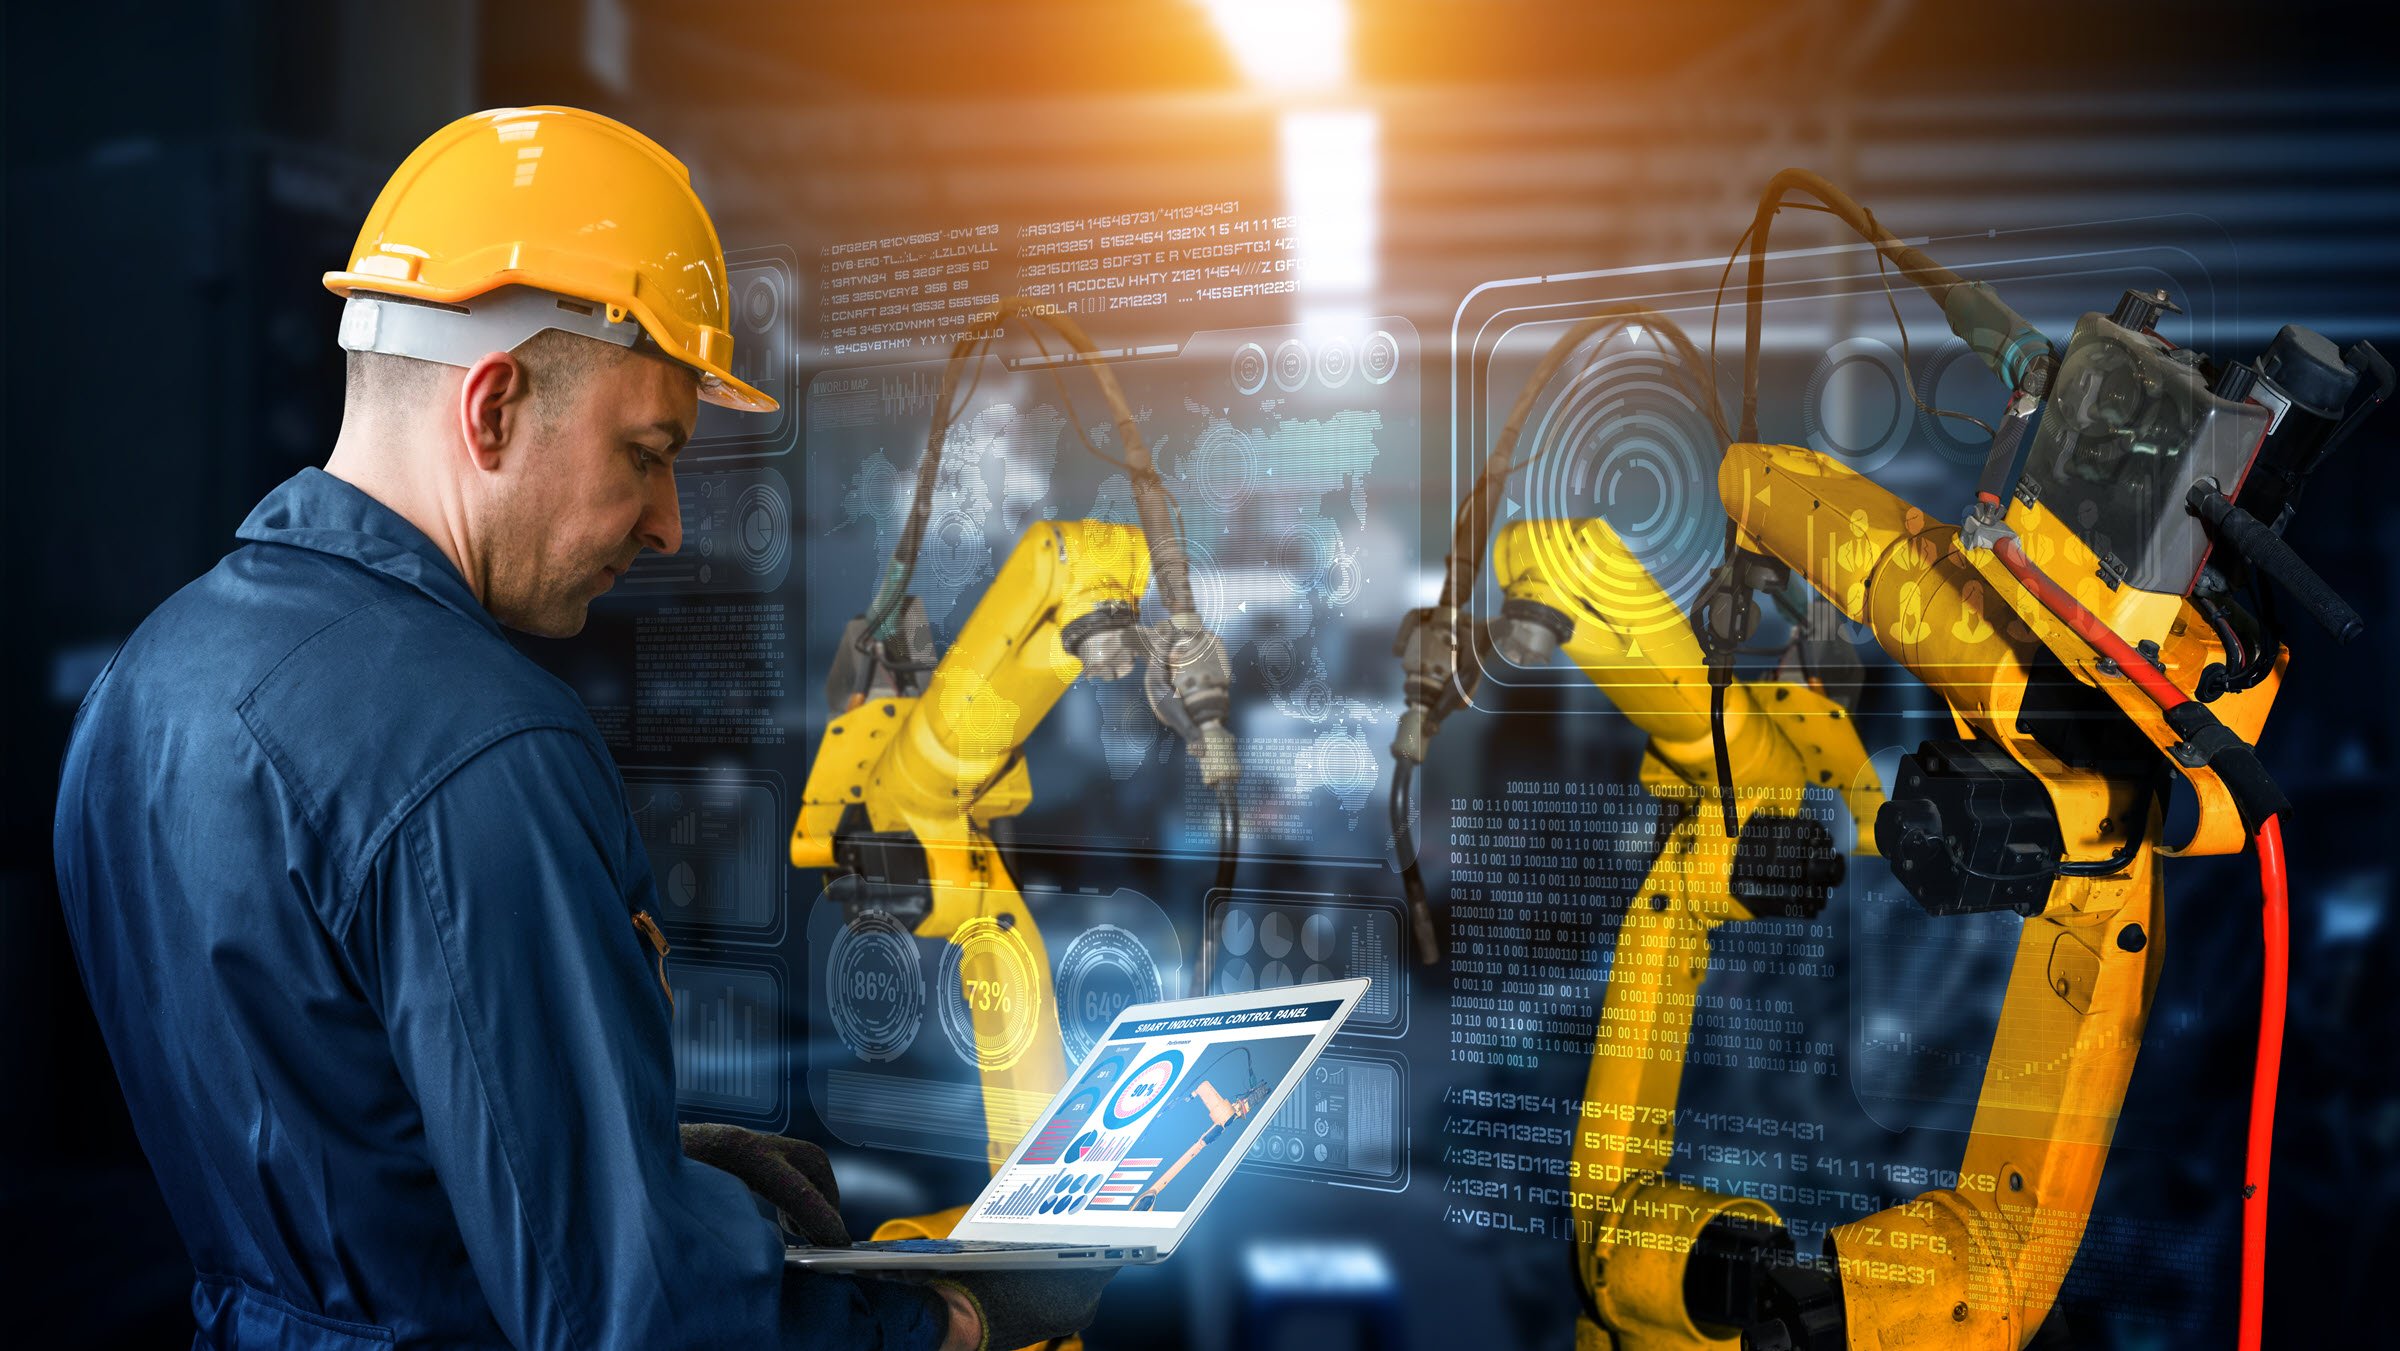 图为戴着黄色安全帽的工程师正在使用数字化工厂生产技术的智能自动机械臂，展示出工业 4.0 或第四次工业革命的自动化制造流程，以及用于控制操作的物联网软件